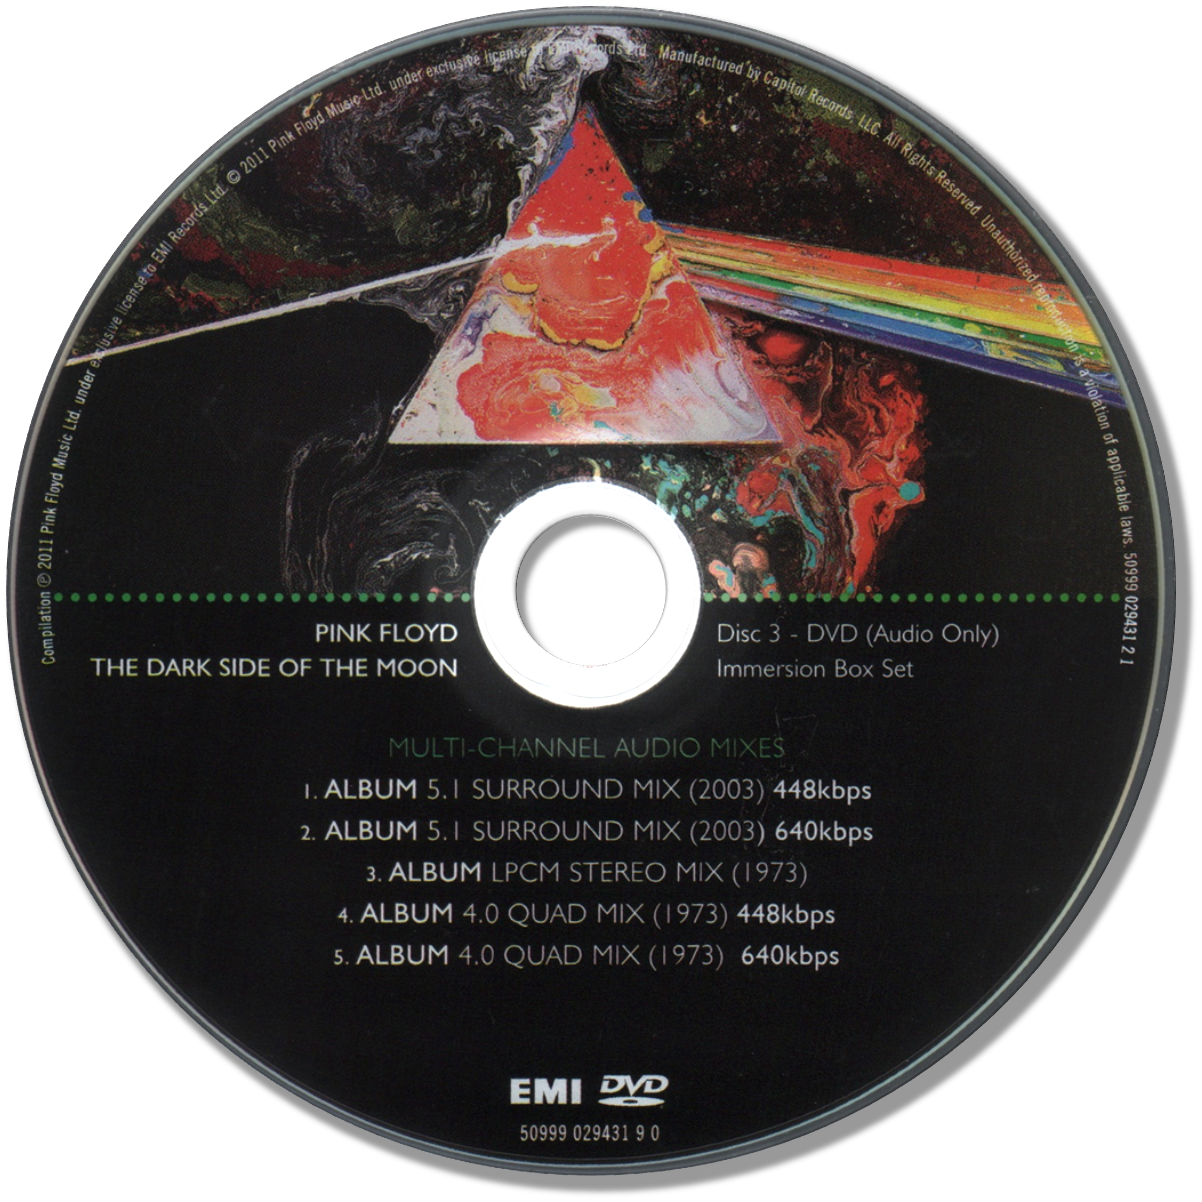 Пинк флойд слушать обратная сторона луны альбом. Пинк Флойд Dark Side of the Moon. Pink Floyd Dark Side of the Moon 1973. Pink Floyd the Dark Side of the Moon 1973 обложка. Pink Floyd the Dark Side of the Moon 1973 обложка CD.